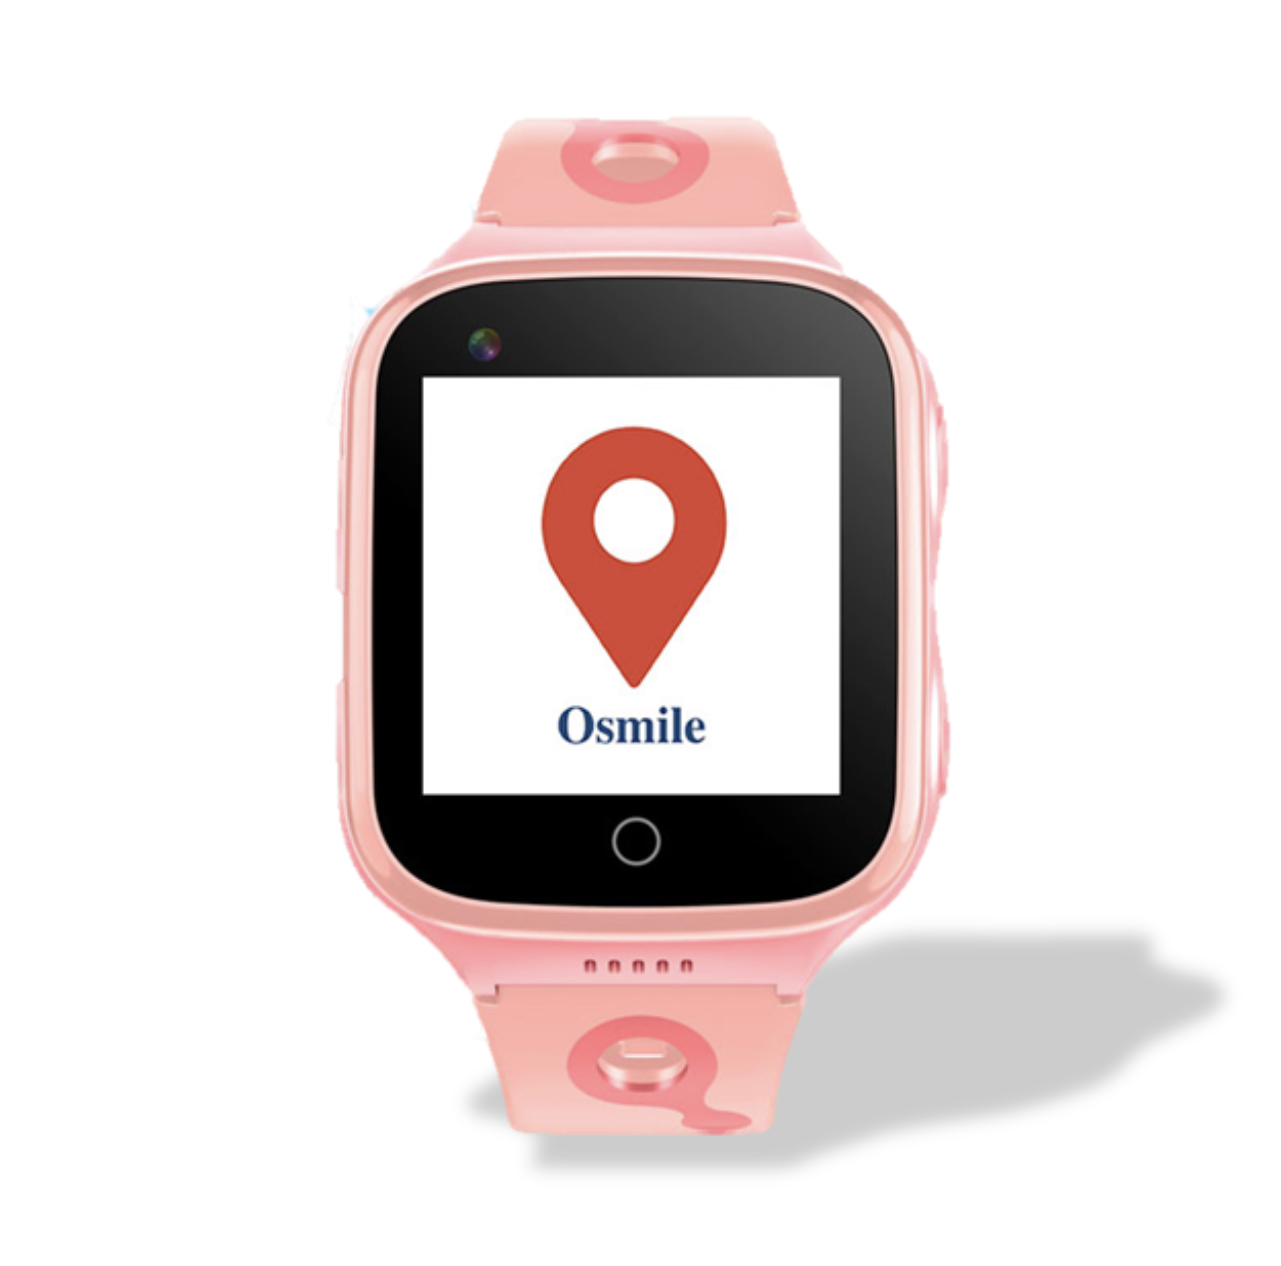 微笑科技 Osmile GPSKD1000 (L) 兒童遠距安全管理智慧手錶 (原廠一年保固 + 專人諮詢服務)